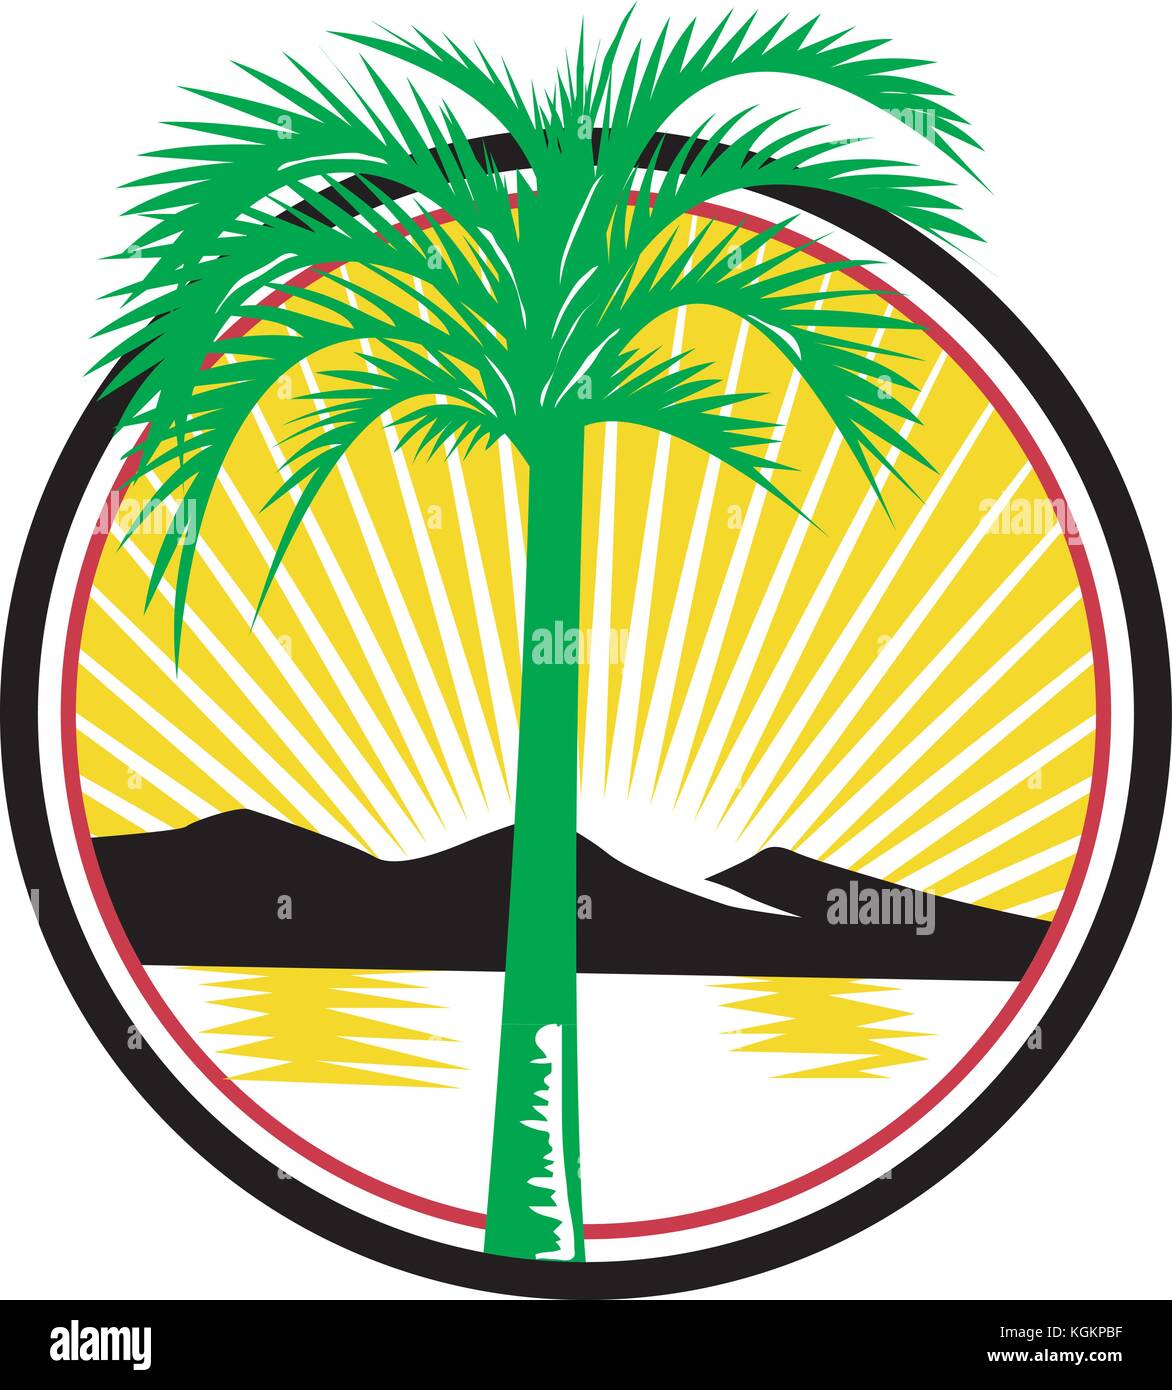 Retro style illustration d'un palmier royal avec la plage, la mer ou l'océan et montagne en arrière-plan défini à l'intérieur du cercle avec la solarisation isolées sur backgrou Illustration de Vecteur